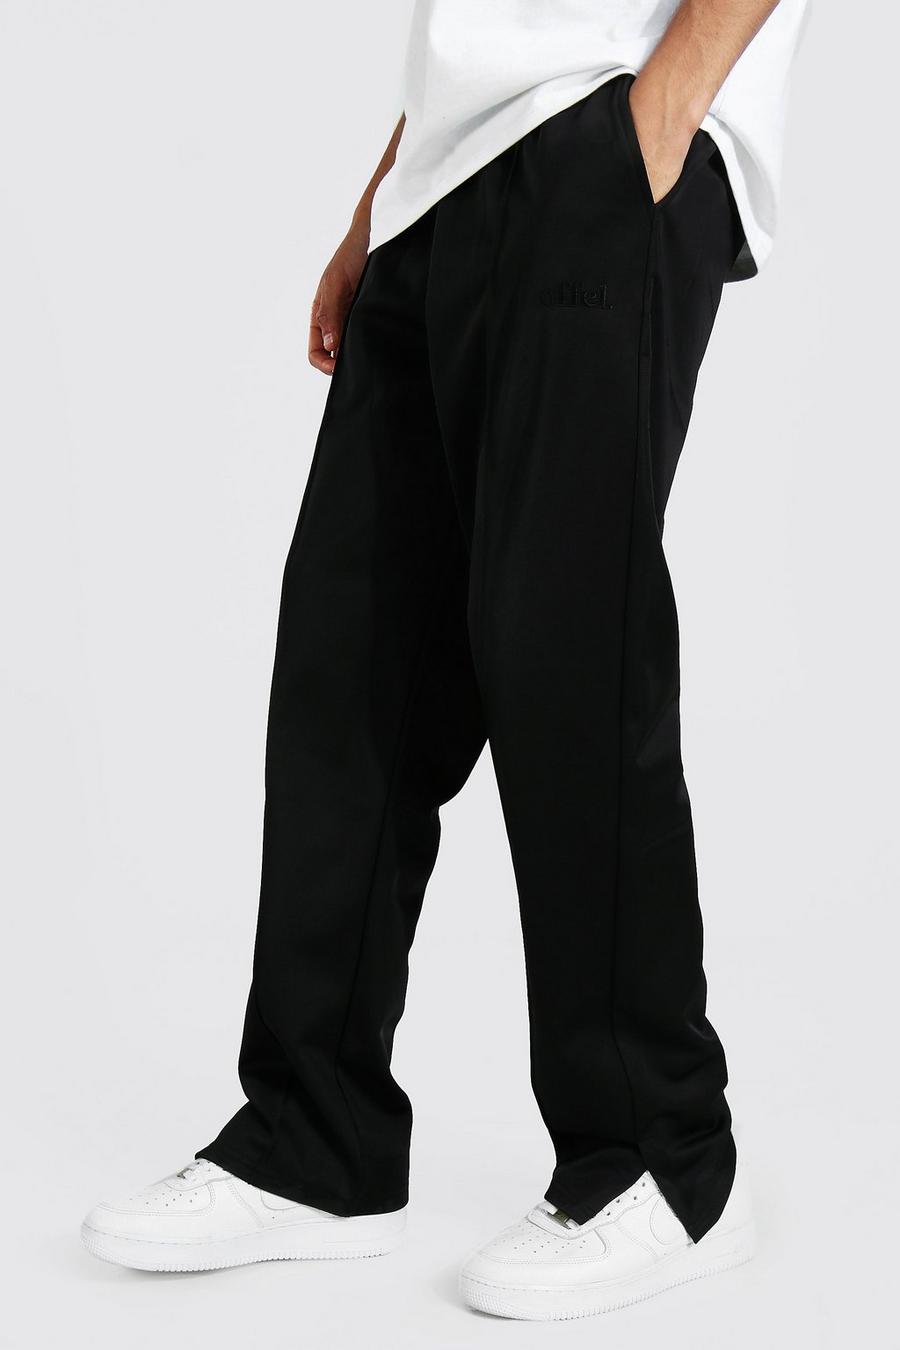 Pantalón deportivo Tall de tejido por urdimbre holgados con alforza, Black nero image number 1